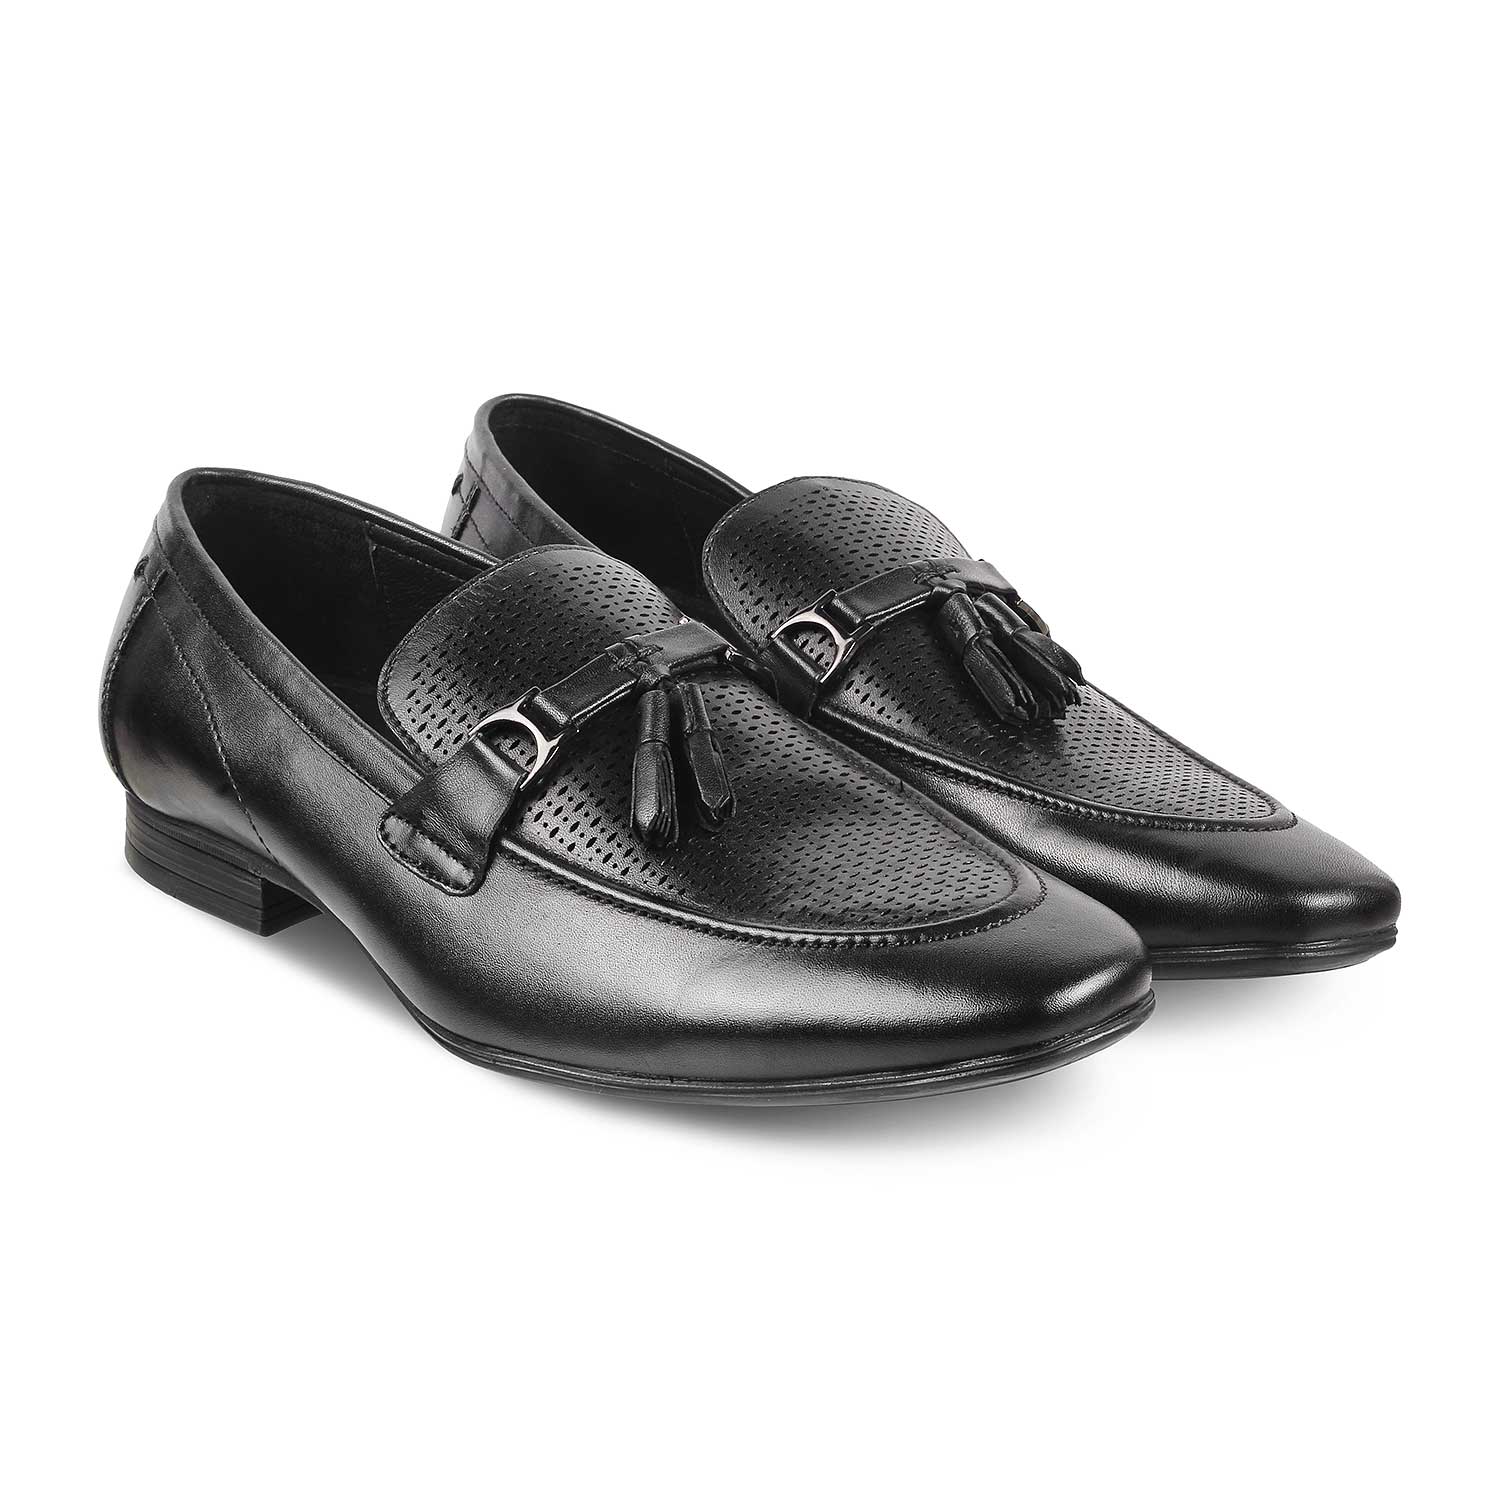 The Tuscan Black Tassel Loafers for Men Online at Tresmode.com